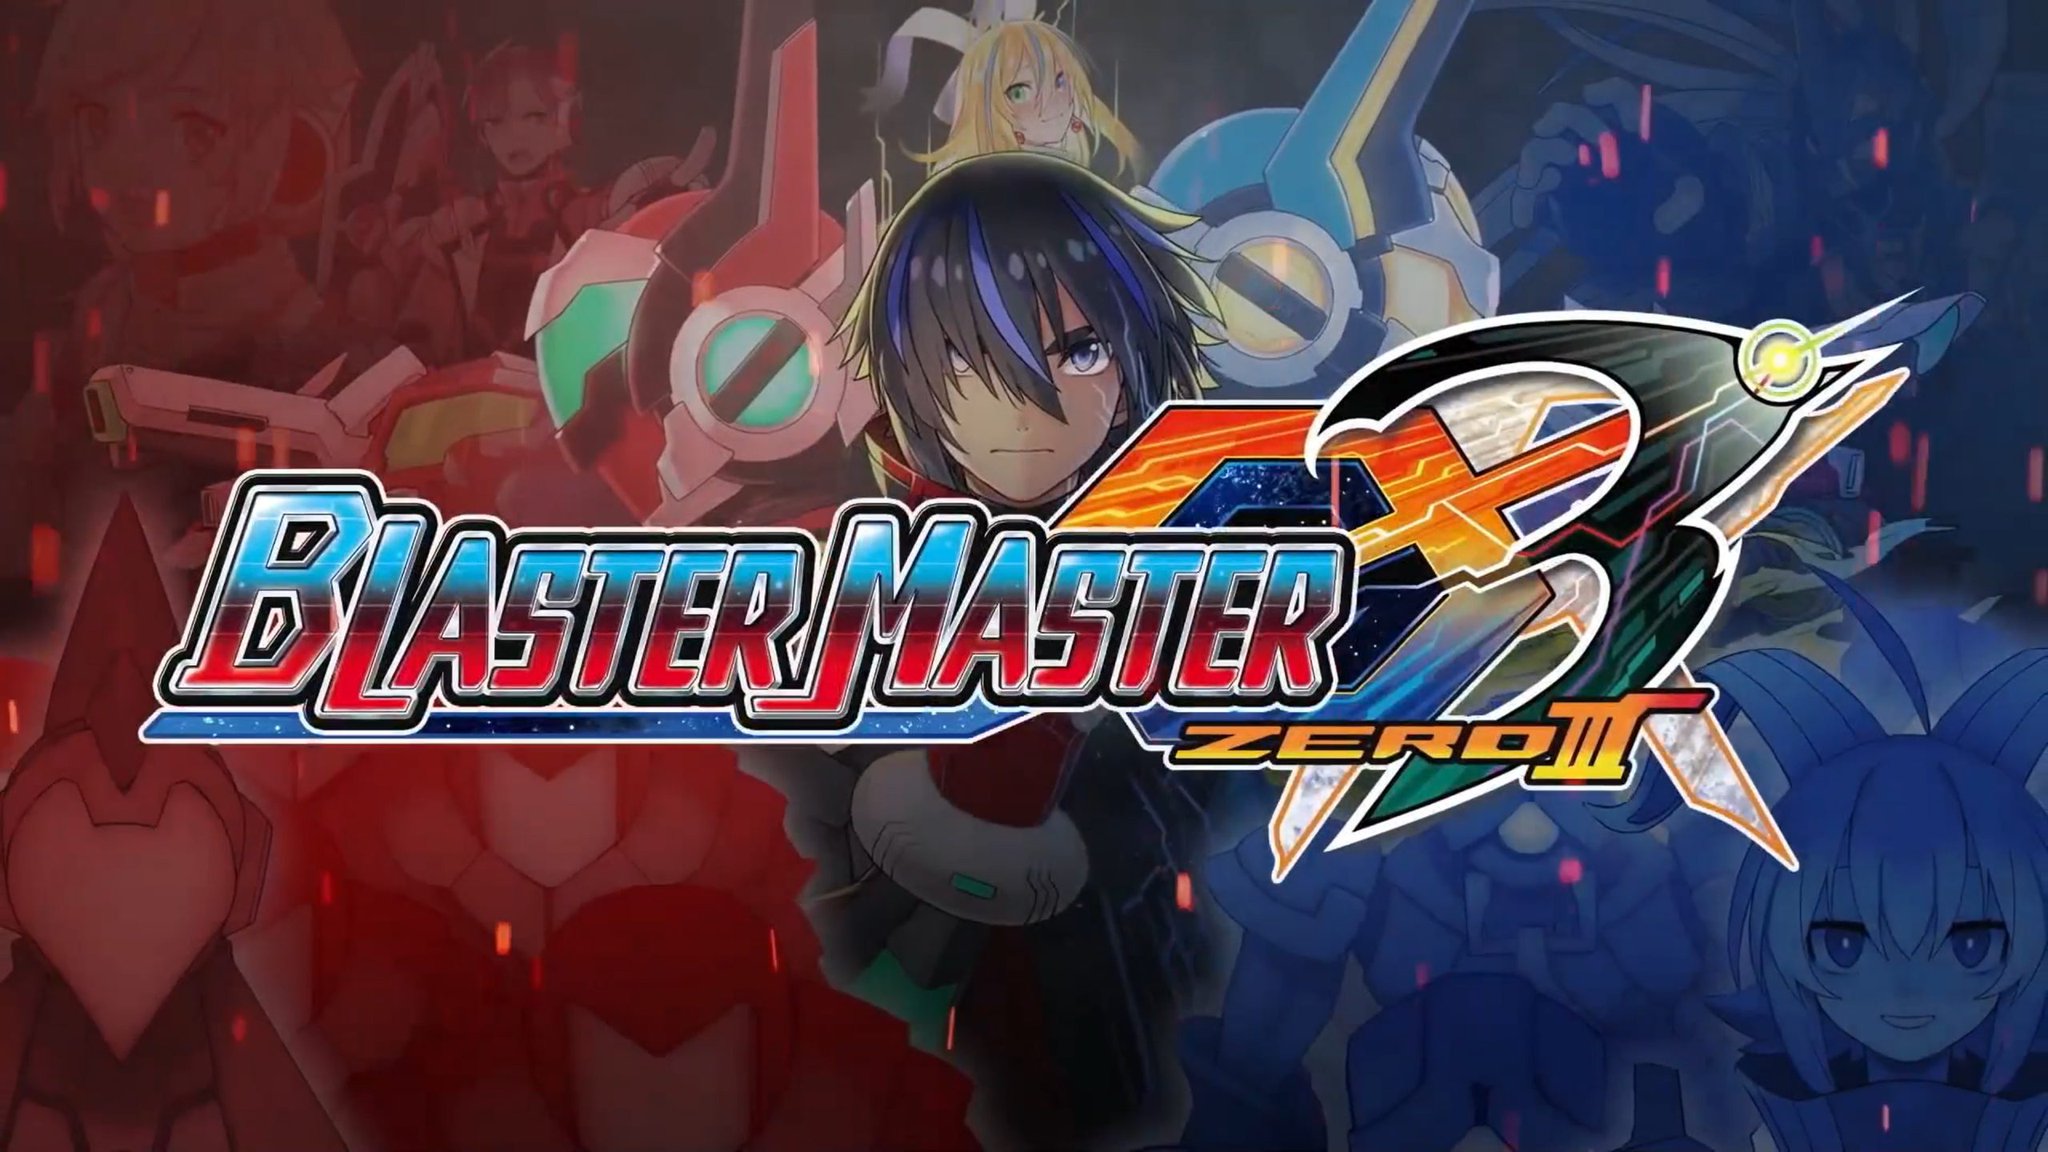 Gipahibalo ang Blaster Master Zero 3